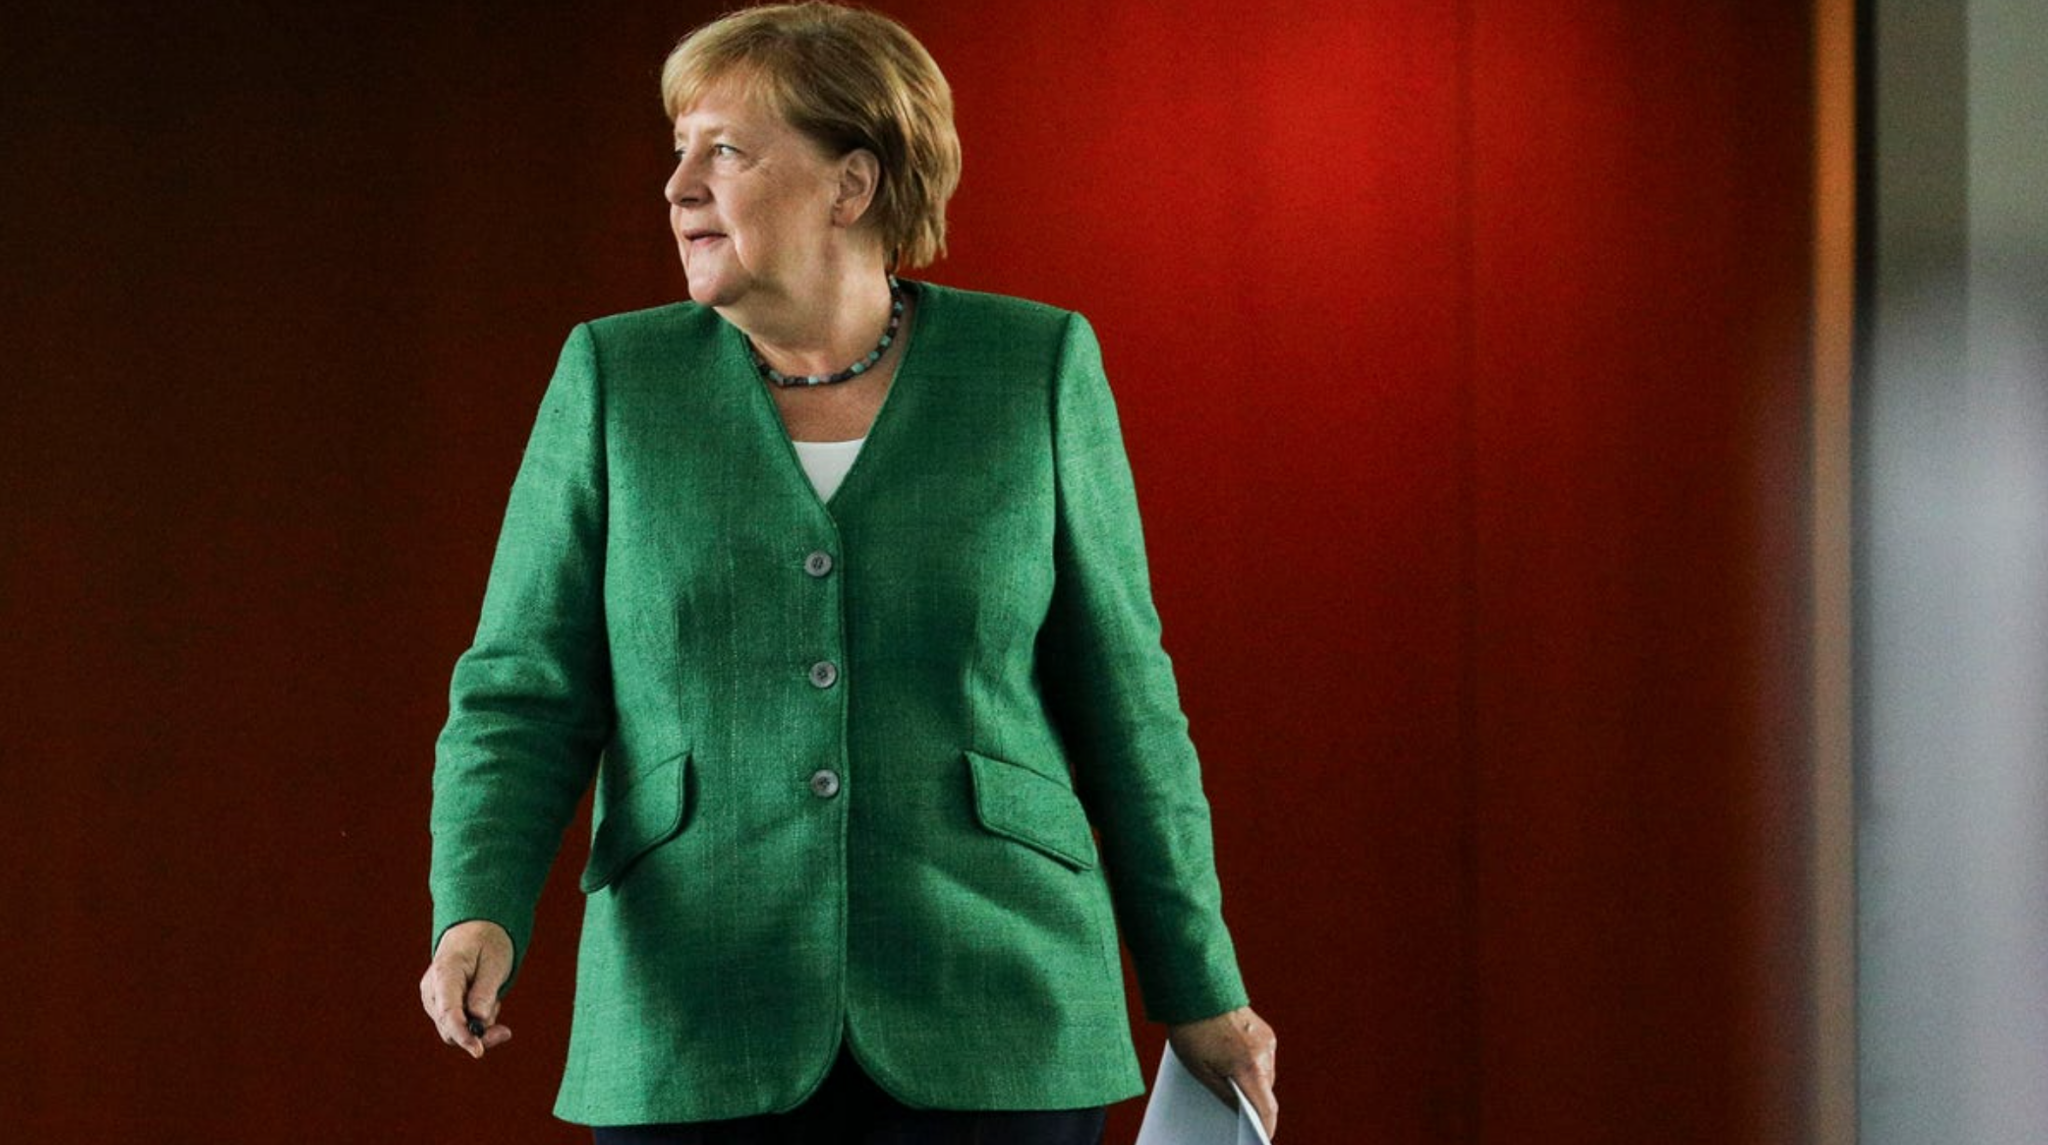 Barevná diplomacie Angely Merkel aneb co má odcházející kancléřka společného s královnou